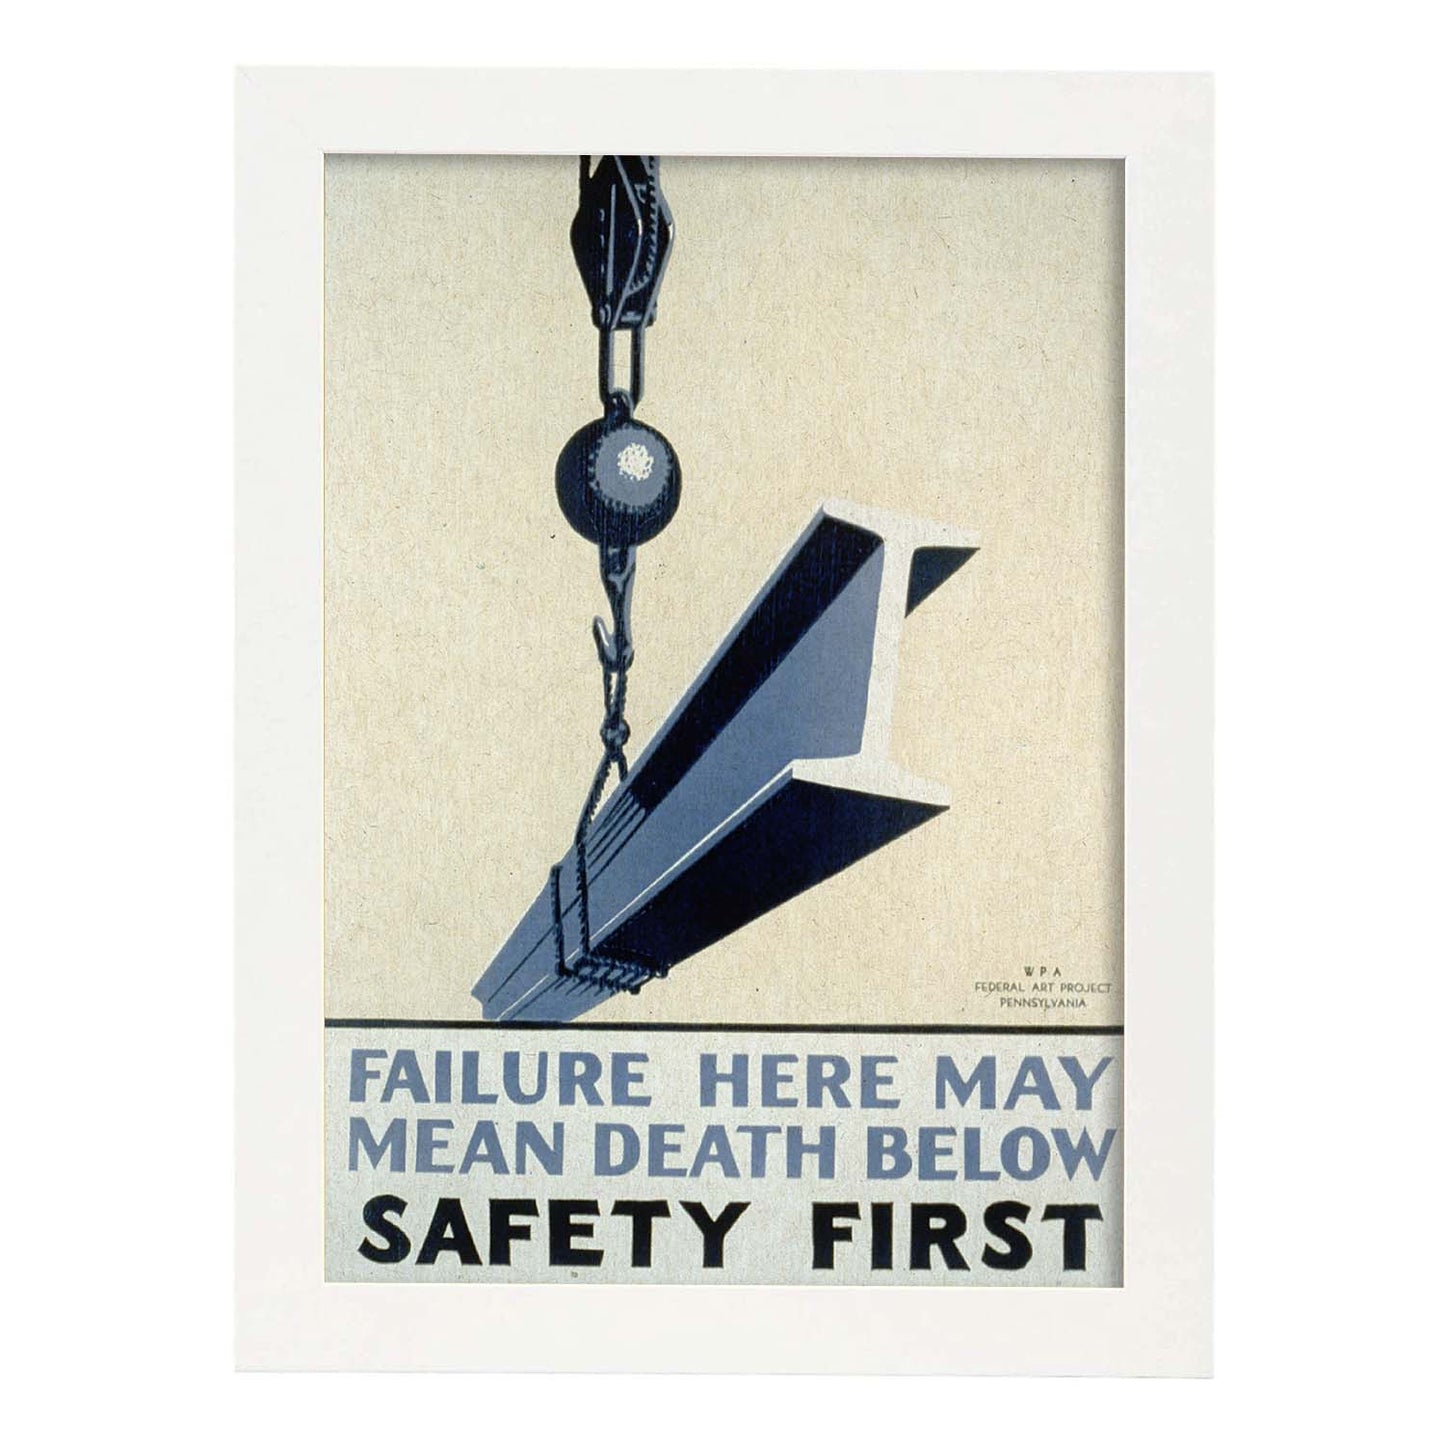 Poster vintage. Cartel vintage del departamento federal de Pennsylvania "Safety first".-Artwork-Nacnic-A4-Marco Blanco-Nacnic Estudio SL